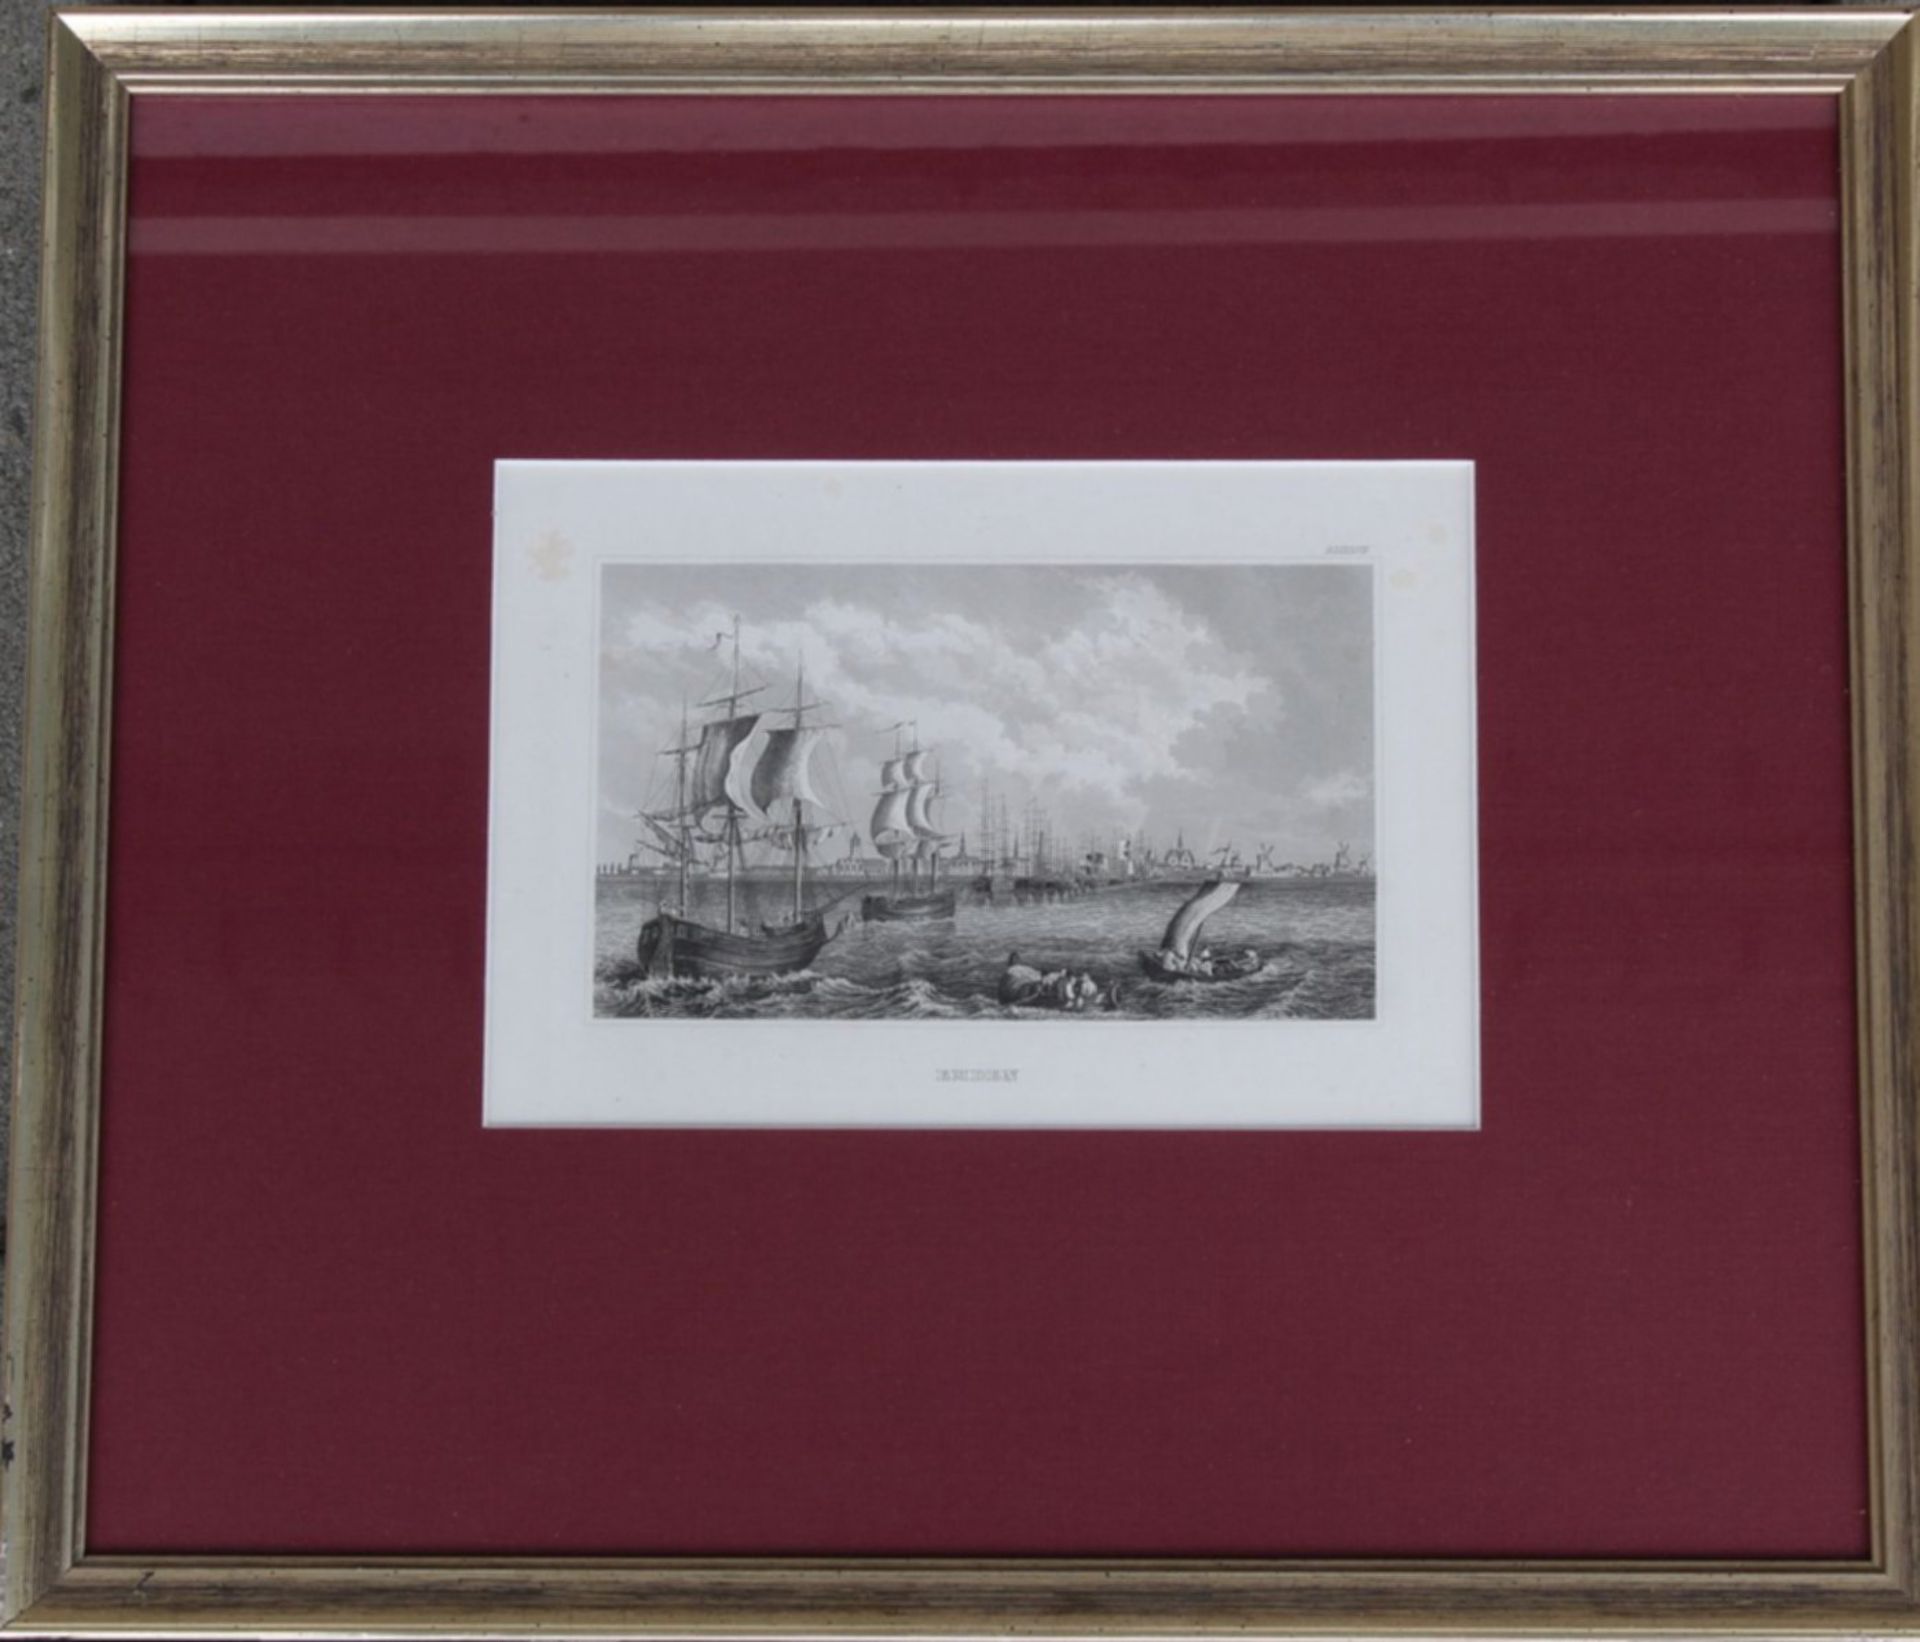 4x Radierungen mit Seeschlachten um 1790, ger7Glas, RG 35x45 cm - Image 7 of 9